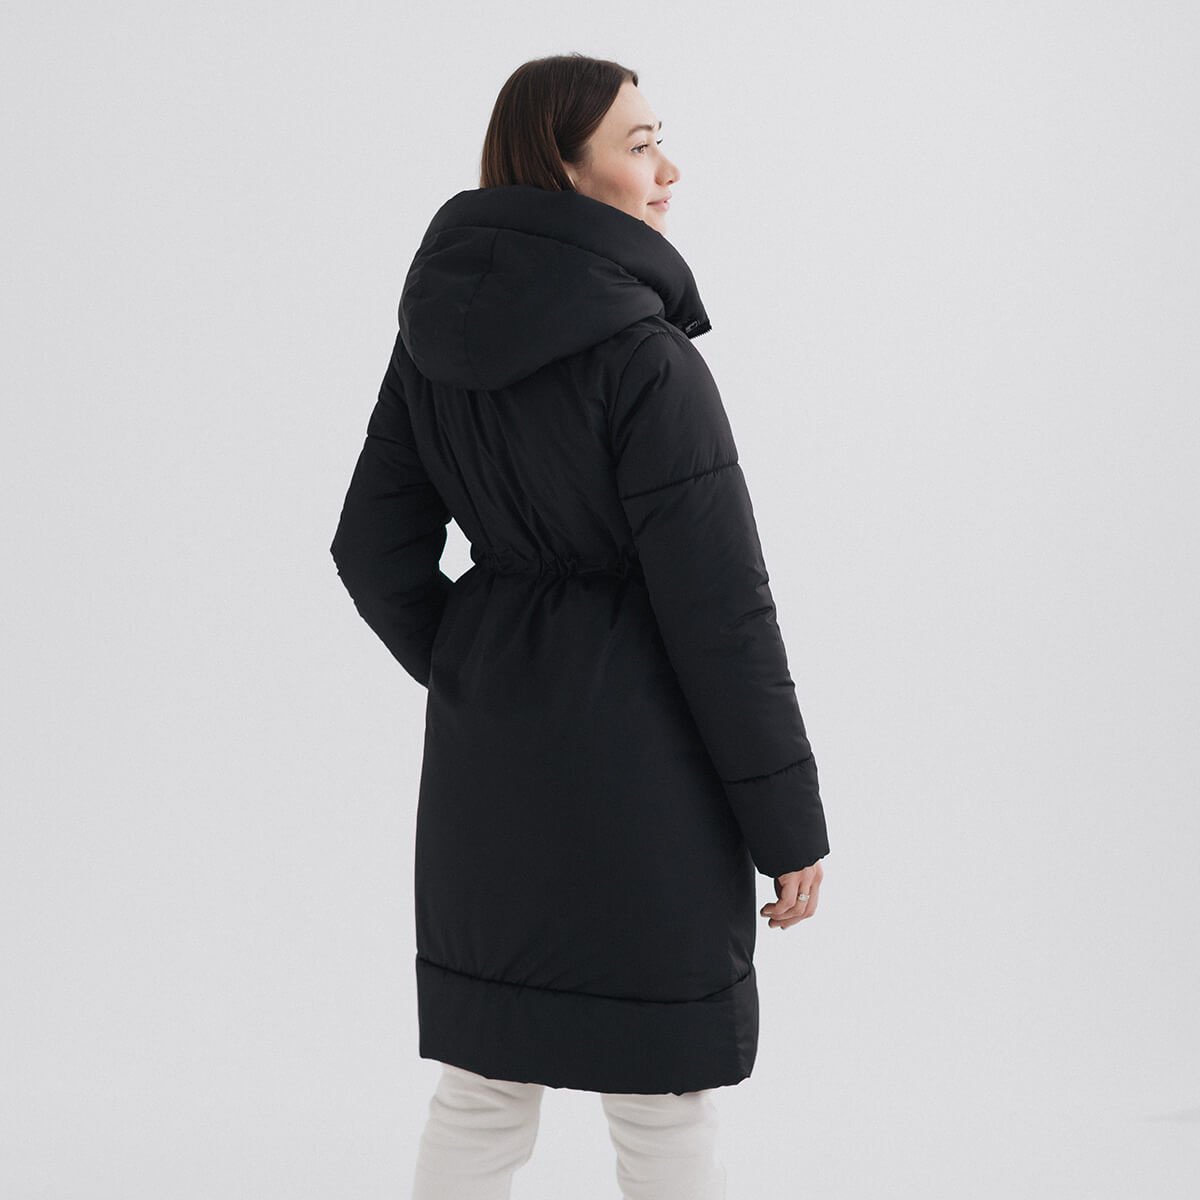 Зимова слінгокуртка/ куртка для вагітних 3в1 Чорна